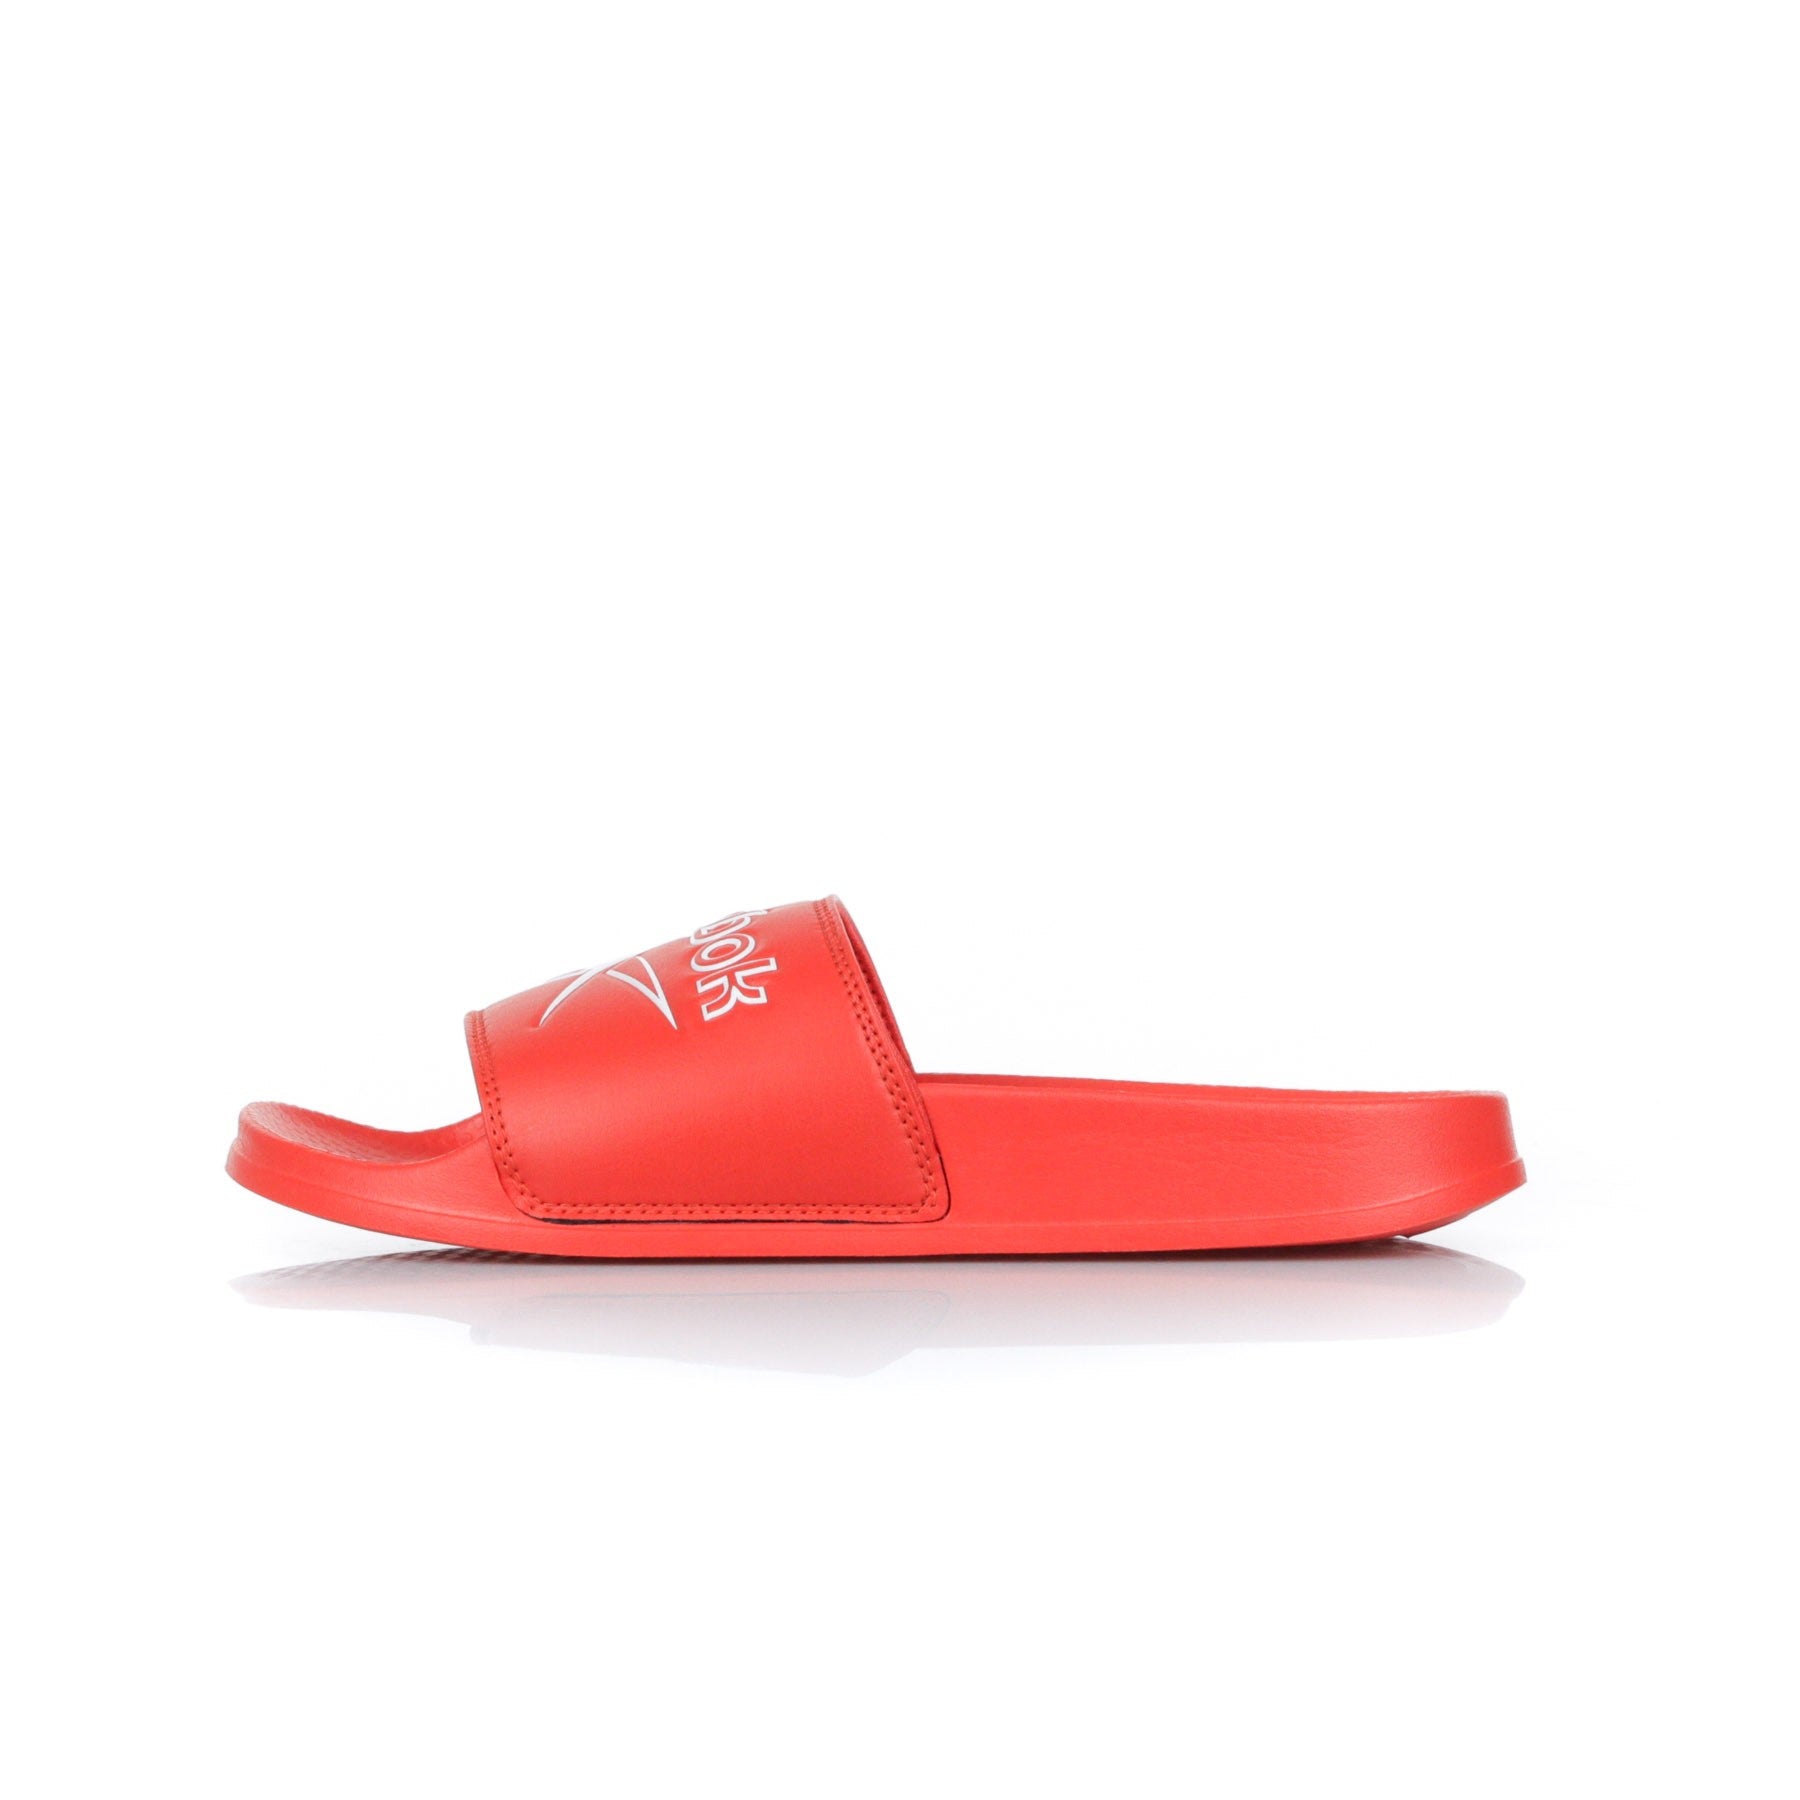 Classic Slide Canton Men's Slippers Red/white/vector